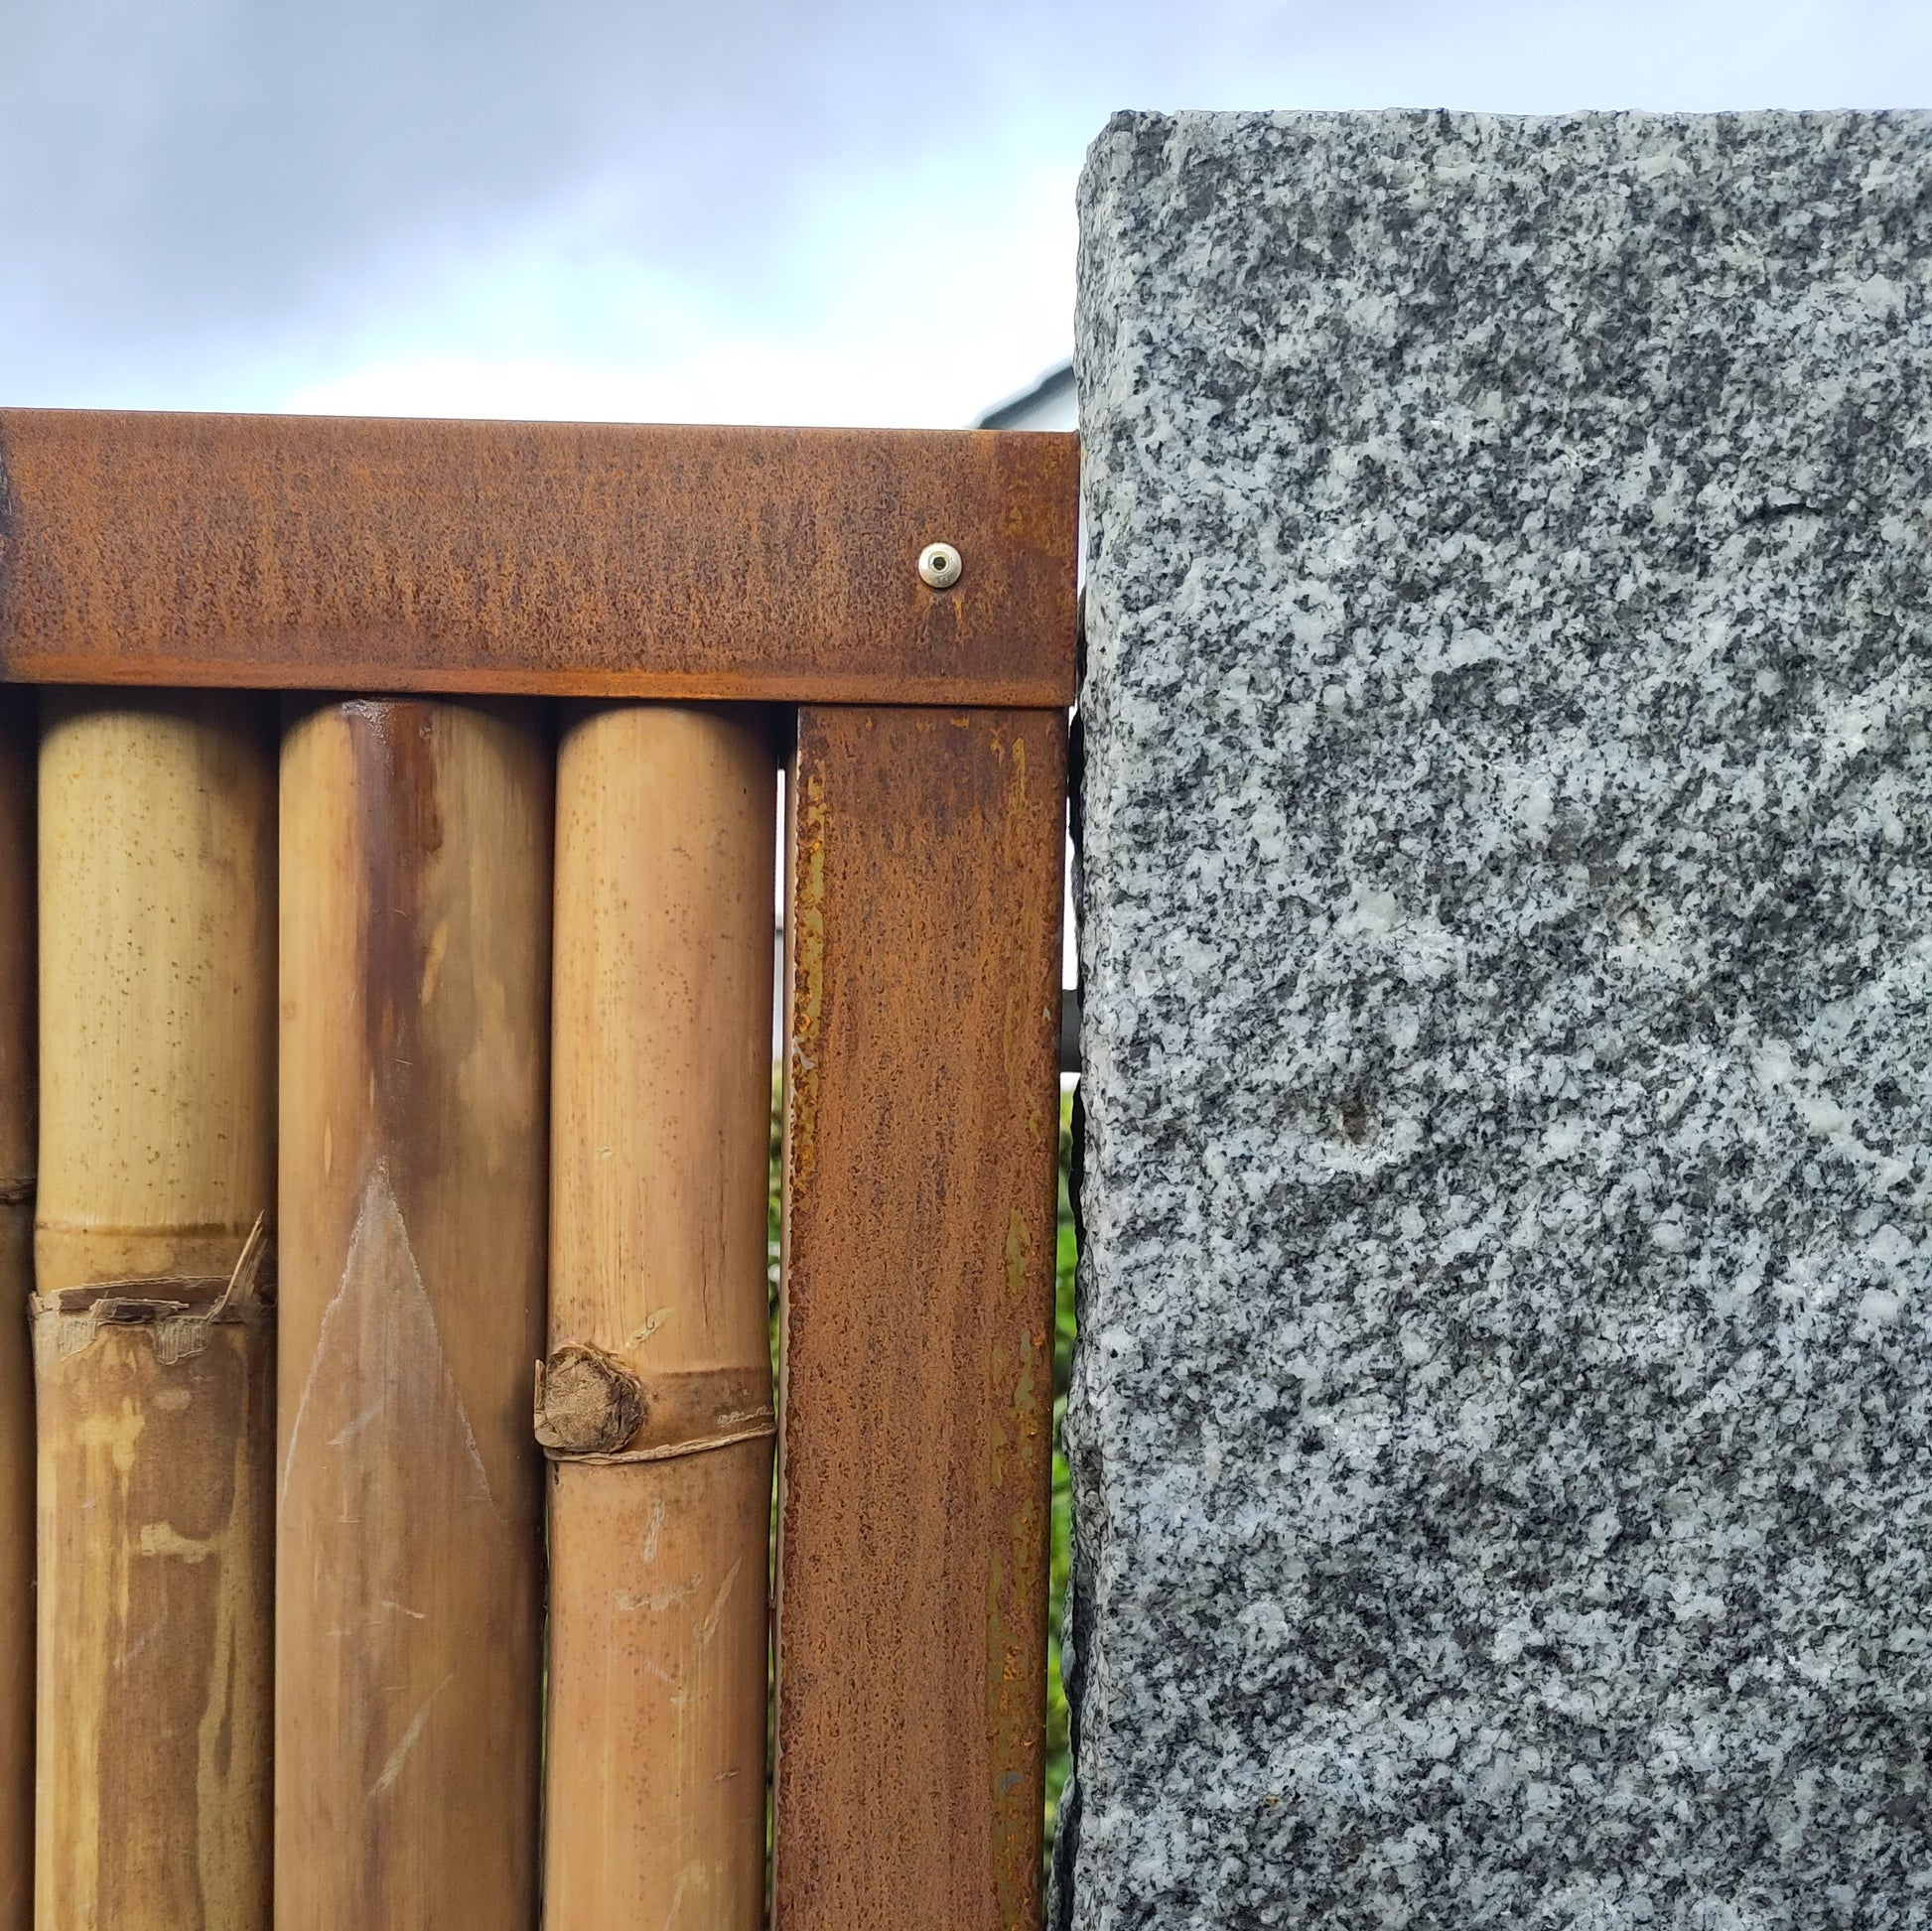 Obere Ecke eines montierten Bambus Zaunfeldes mit umlaufendem Rahmen aus Cortenstahl - das seitliche Rahmenprofil wurde an einer Granit-Palisade befestigt